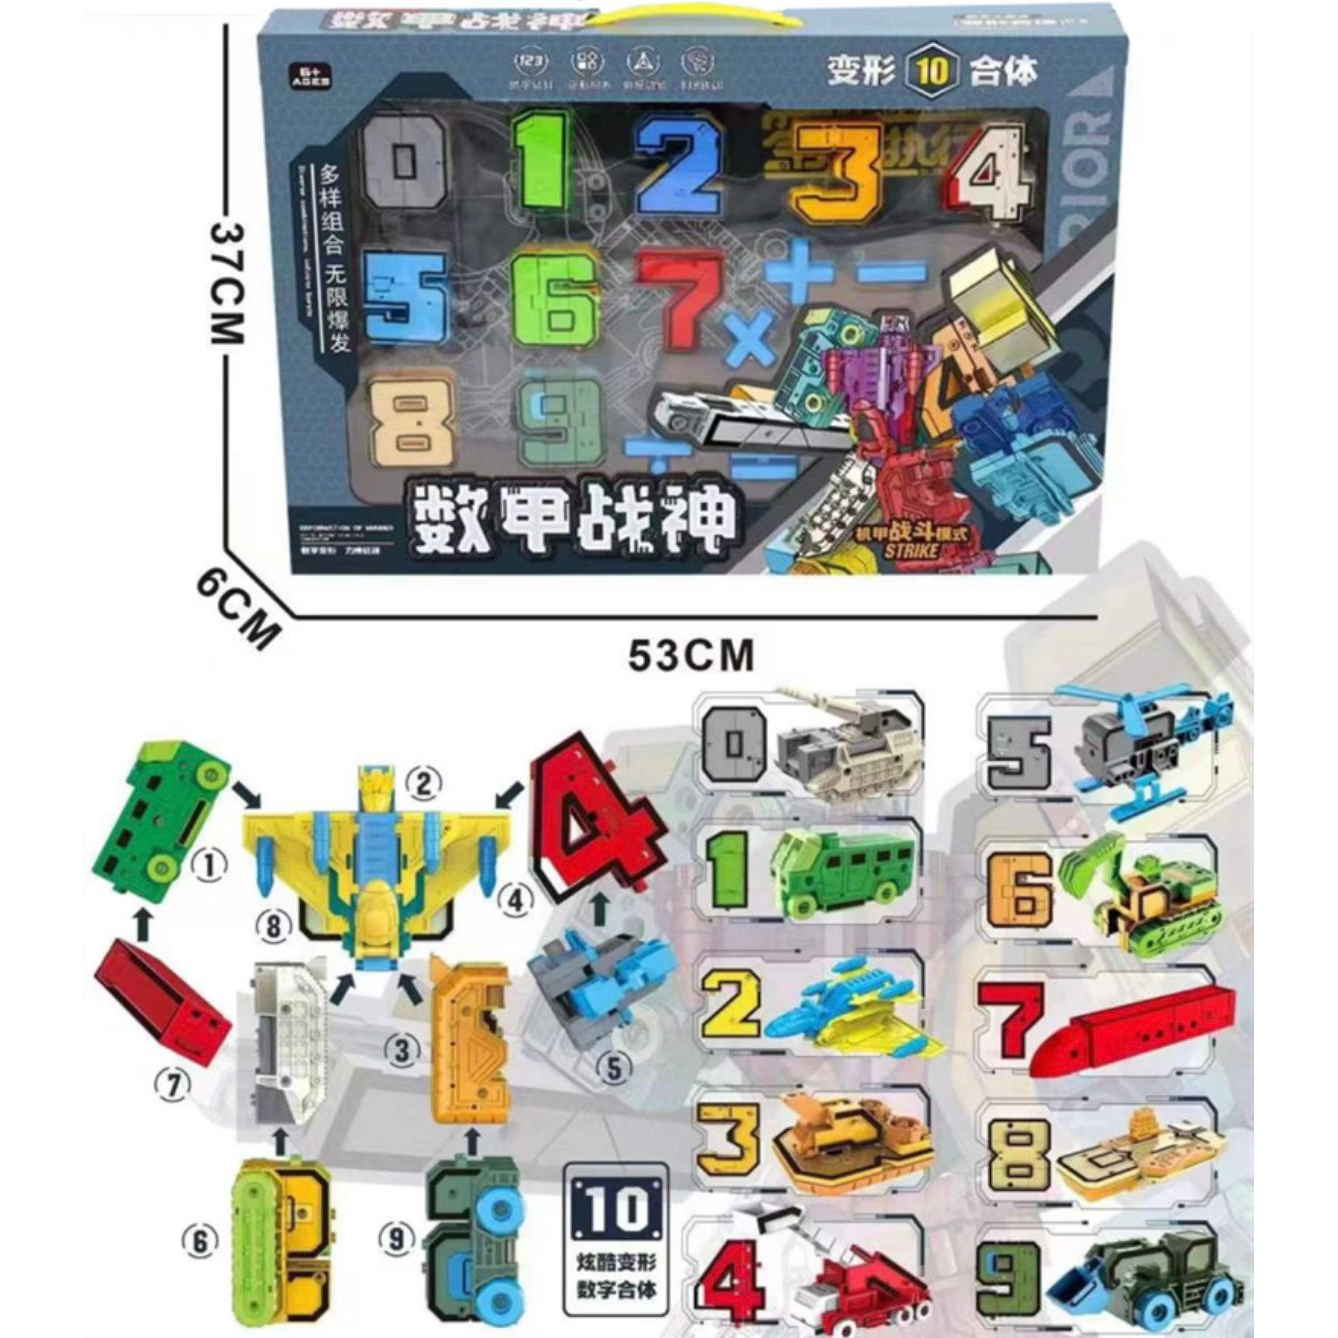 [MS]Mainan Anak Robot Angka / Transformer Angka Berubah Bentuk / Puzzle Robot / Mainan Rangkai Robot / Kendaraan Tempur / Robot 0-9 / Mainan Edukasi Balok Angka Robot